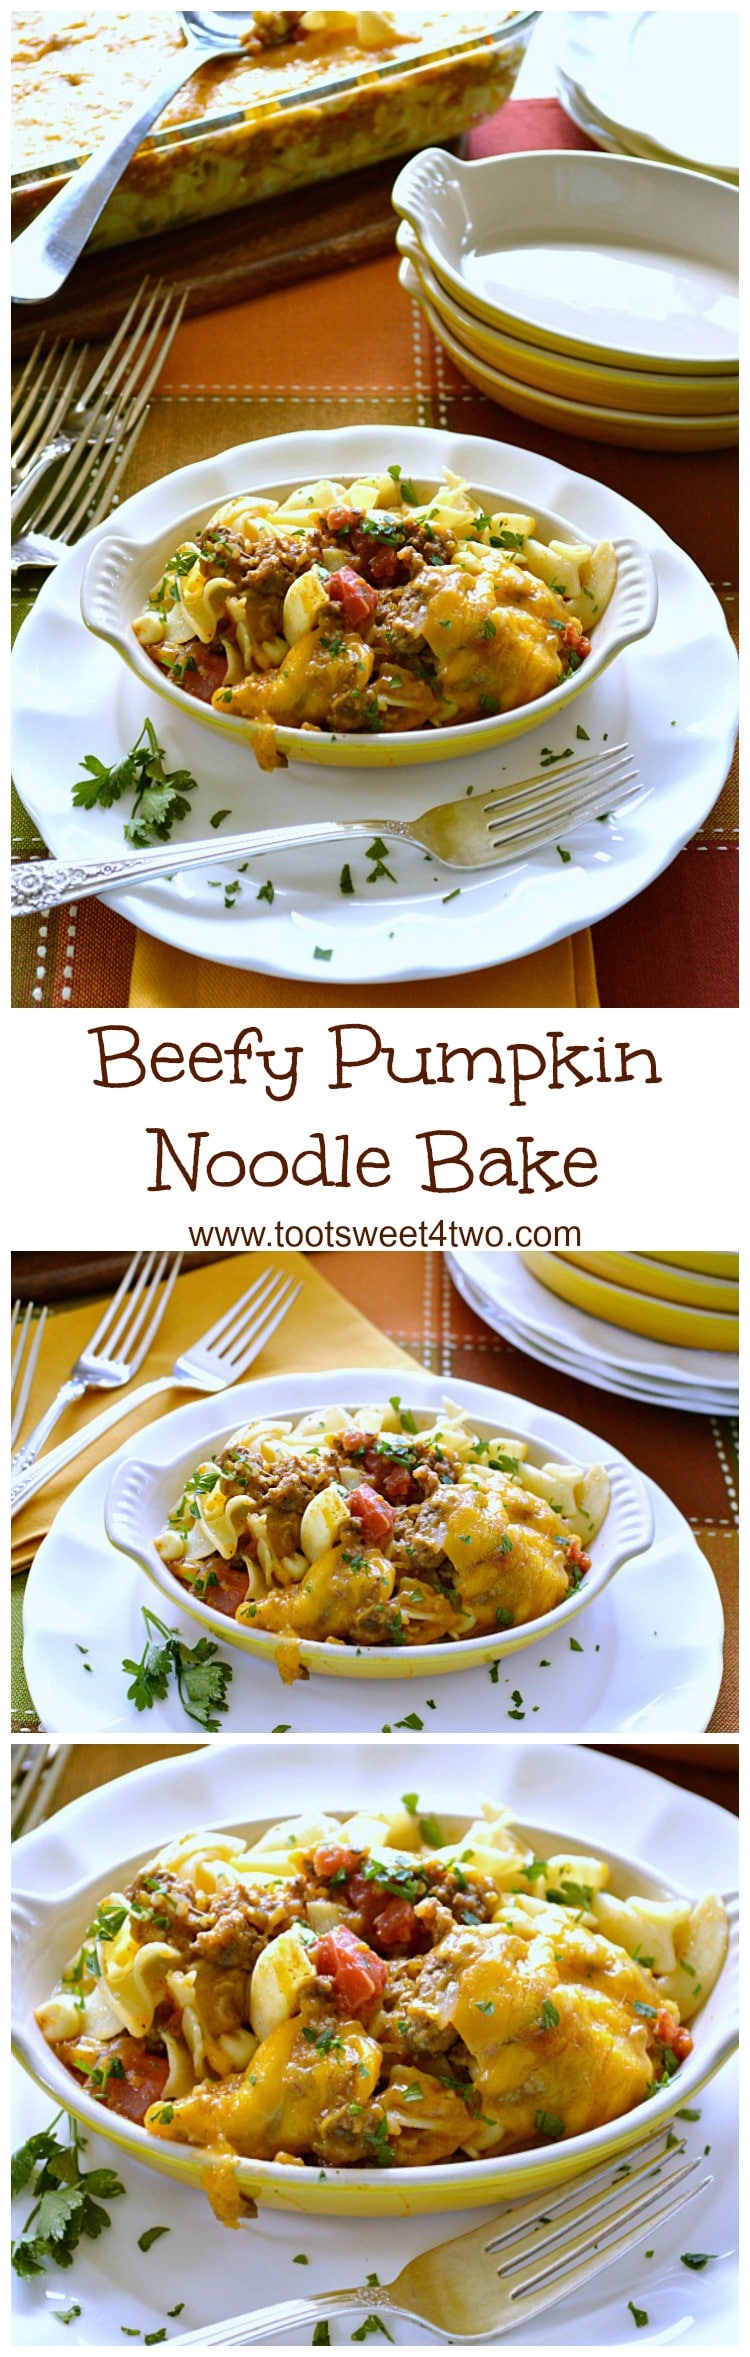 Beefy Pumpkin Noodle Bake collage